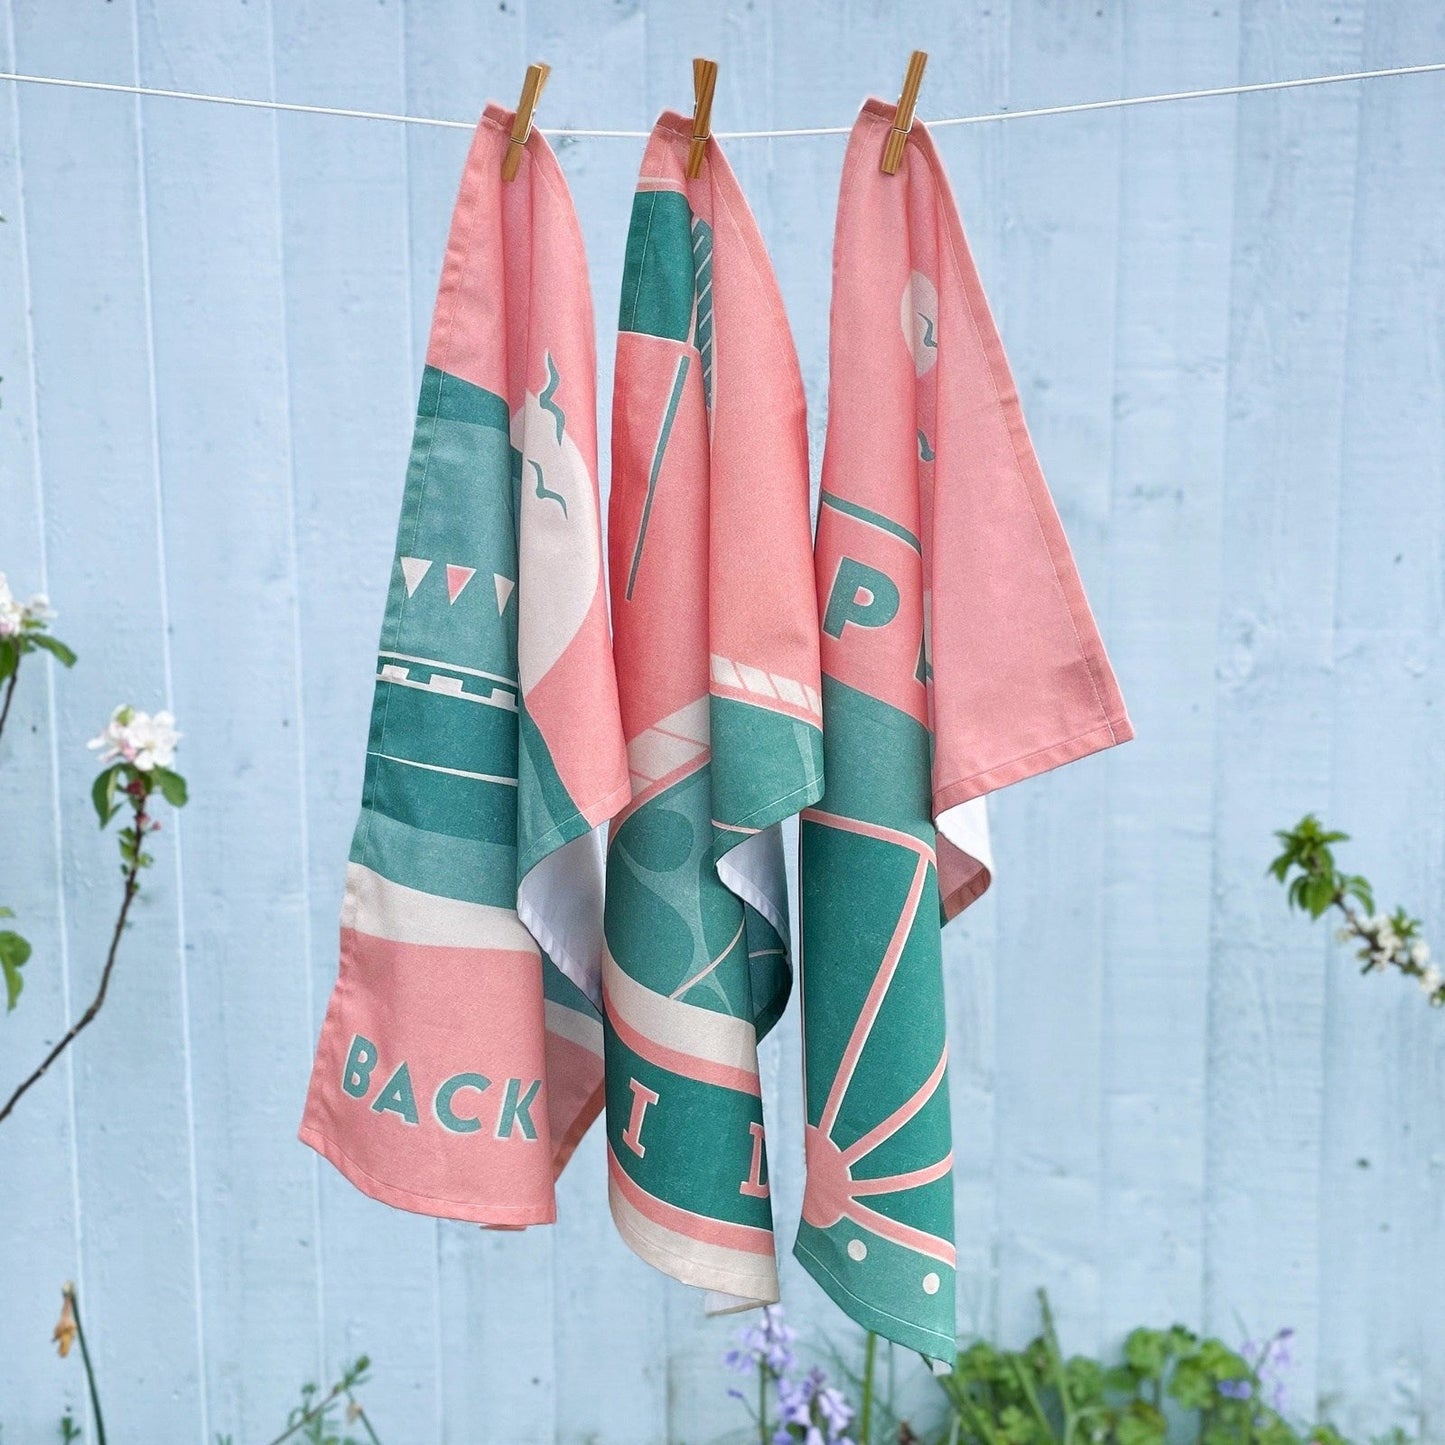 'Back Beach' Tea Towel